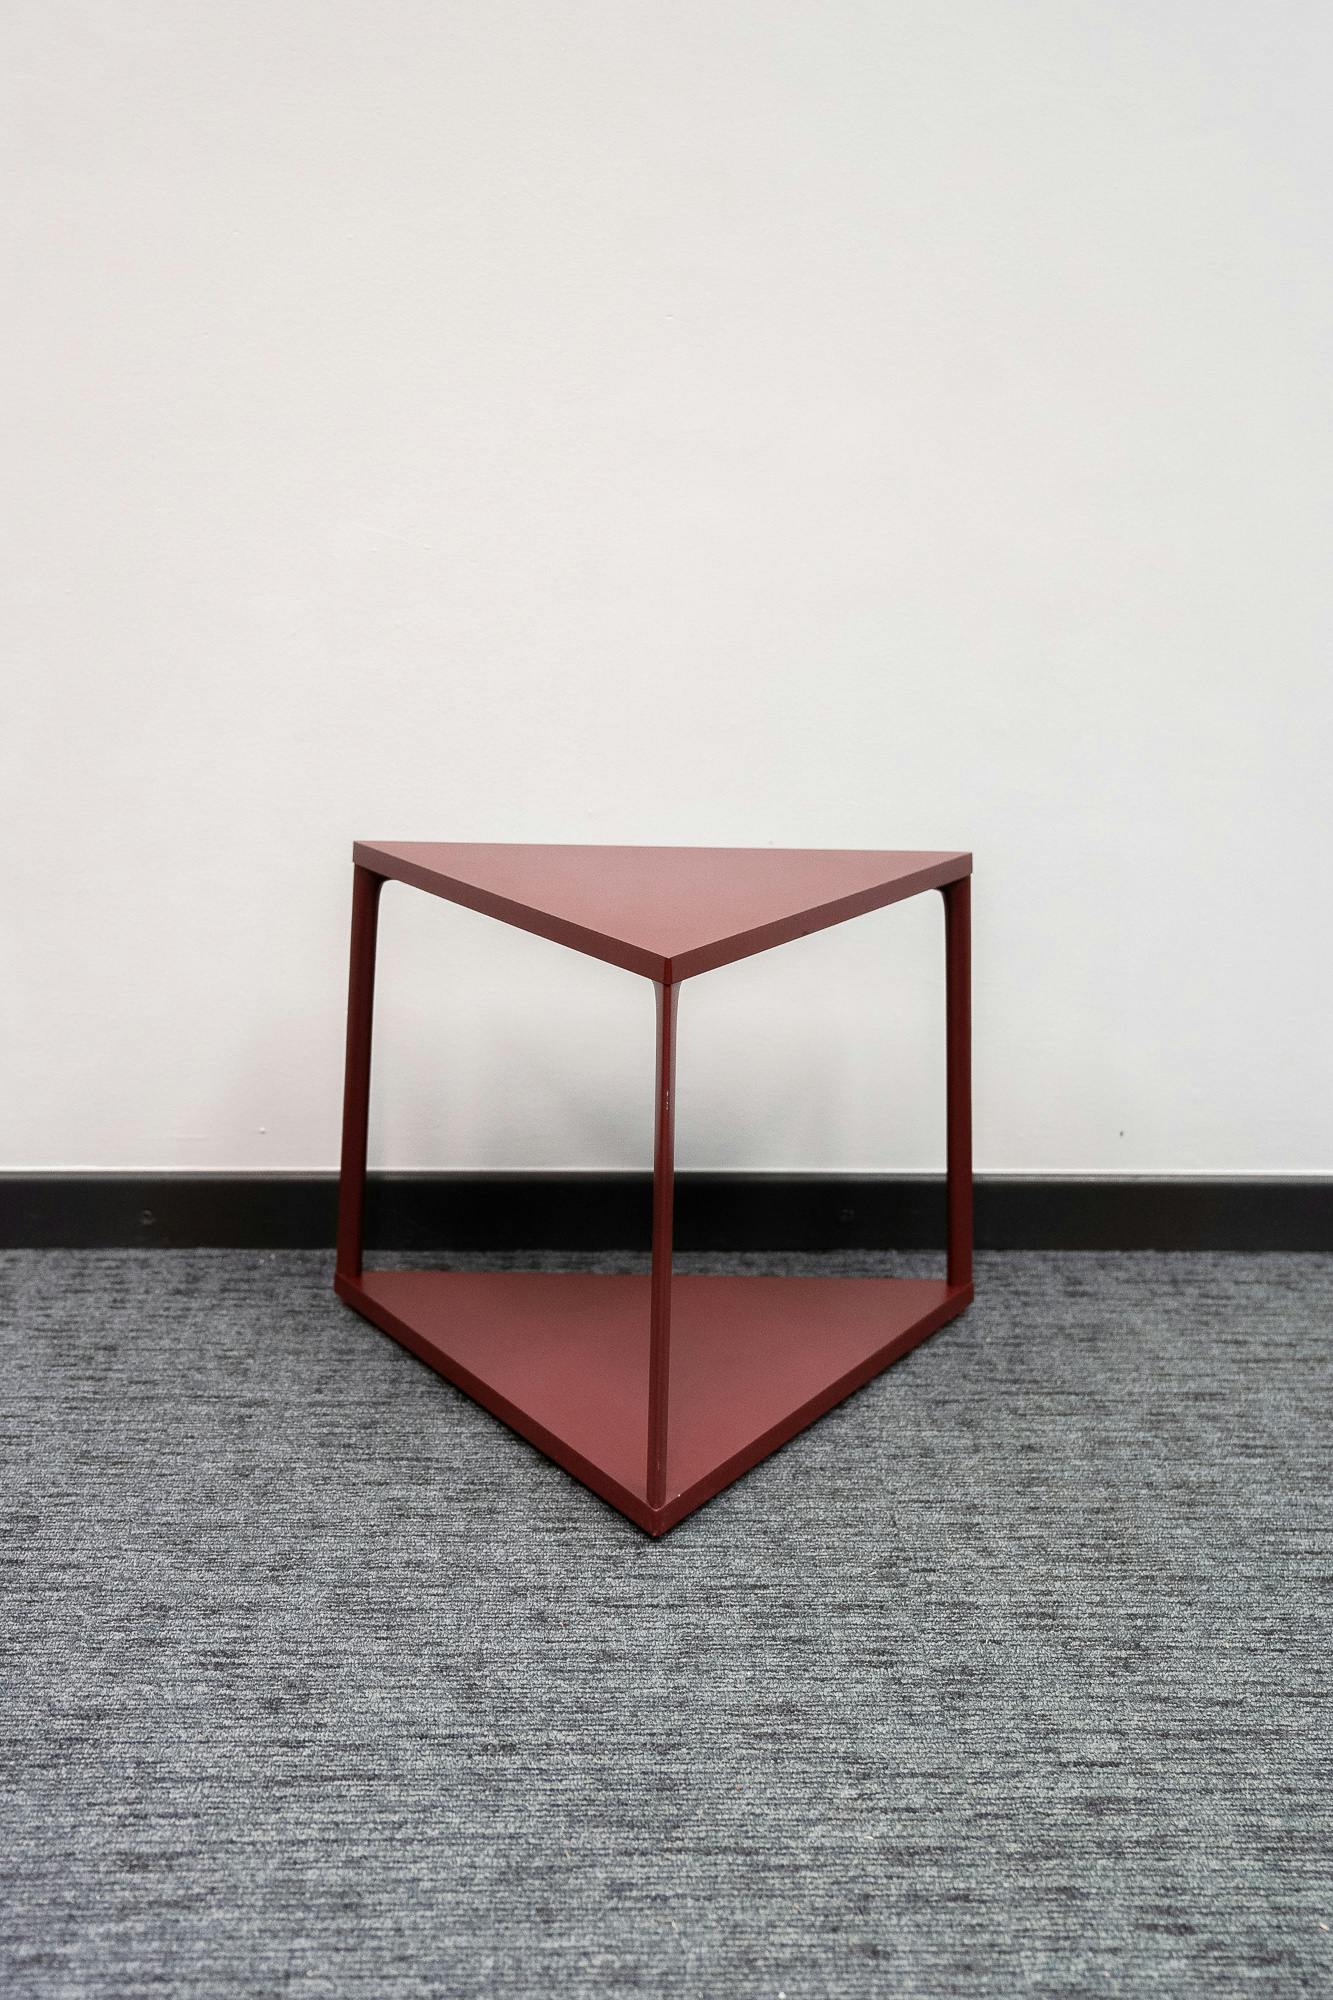 Rode driehoekige salontafel - Tweedehands kwaliteit "Tafels" - Relieve Furniture - 3